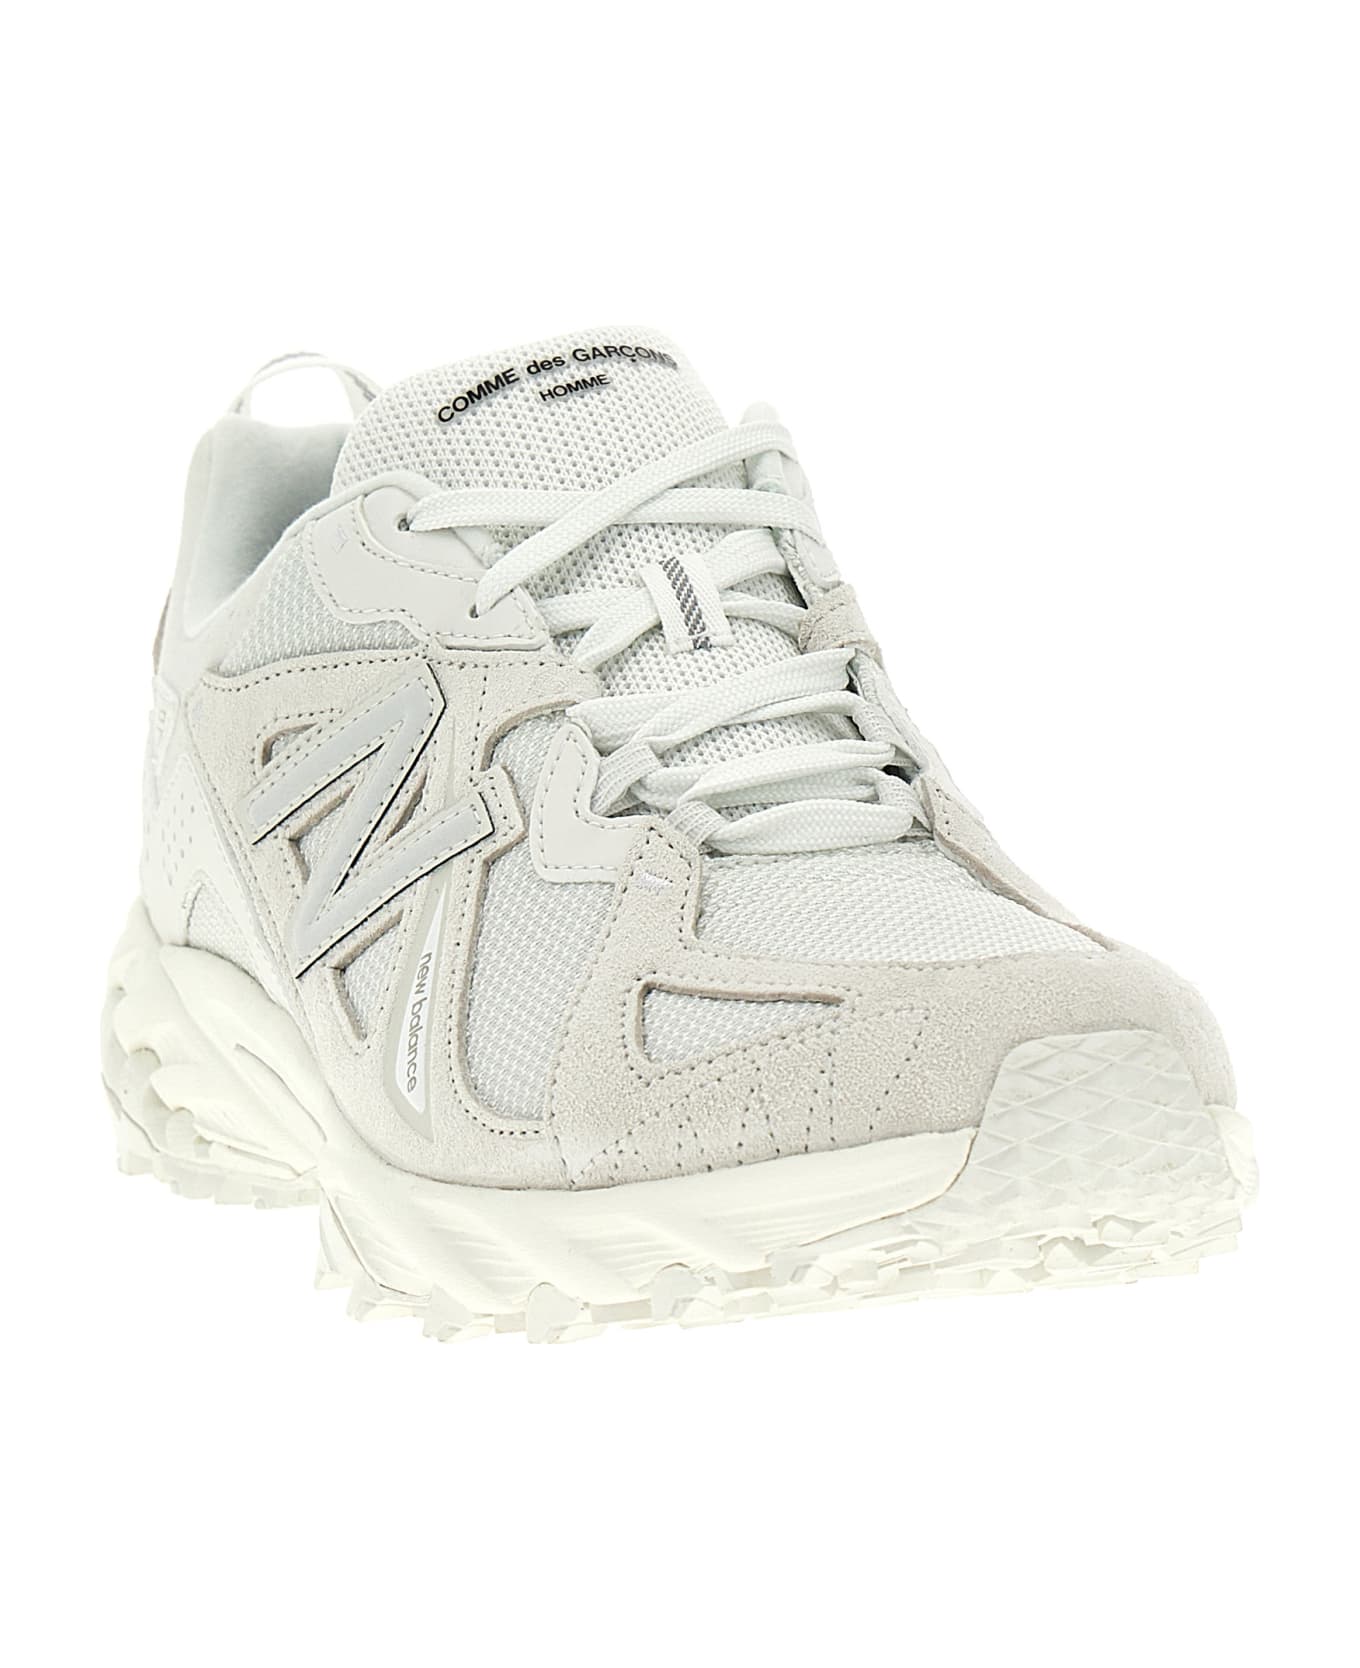 Comme des Garçons Homme X New Balance Sneakers - White